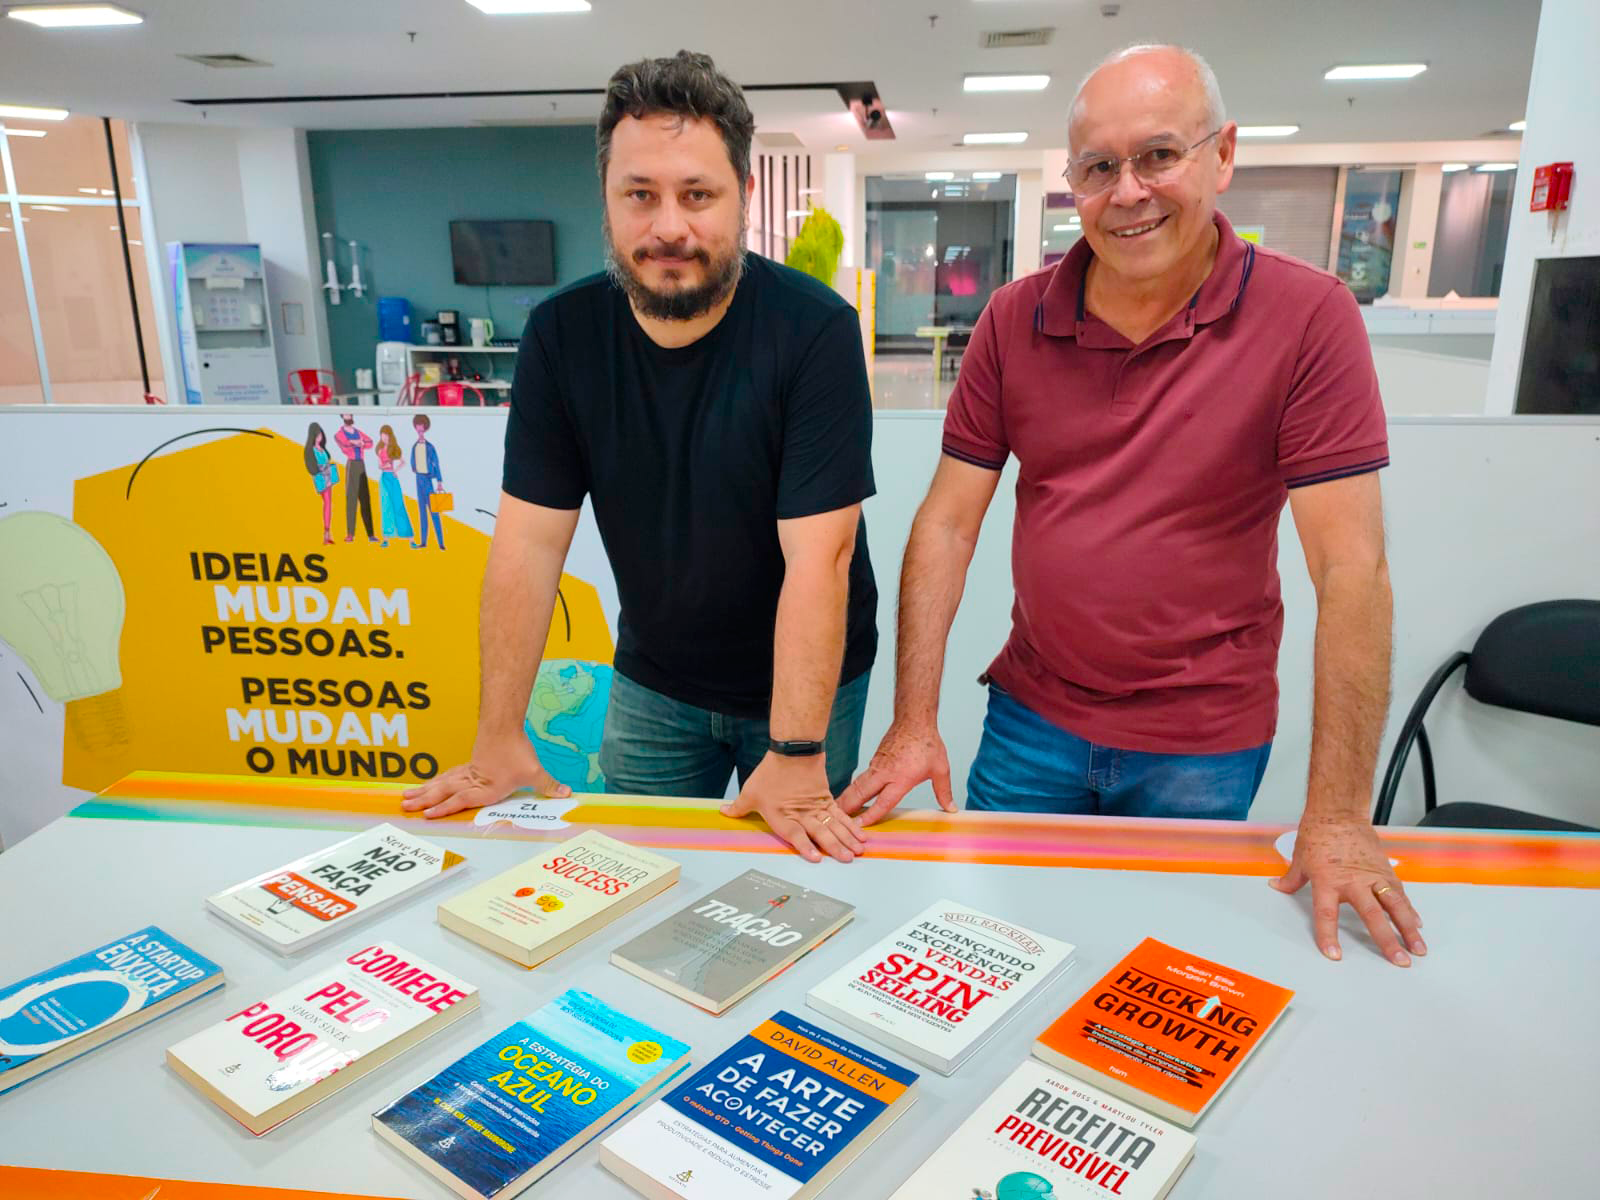 Livros doados ao HITT por Felipe Souza, voltados para o desenvolvimento de projetos de negócios e startups.